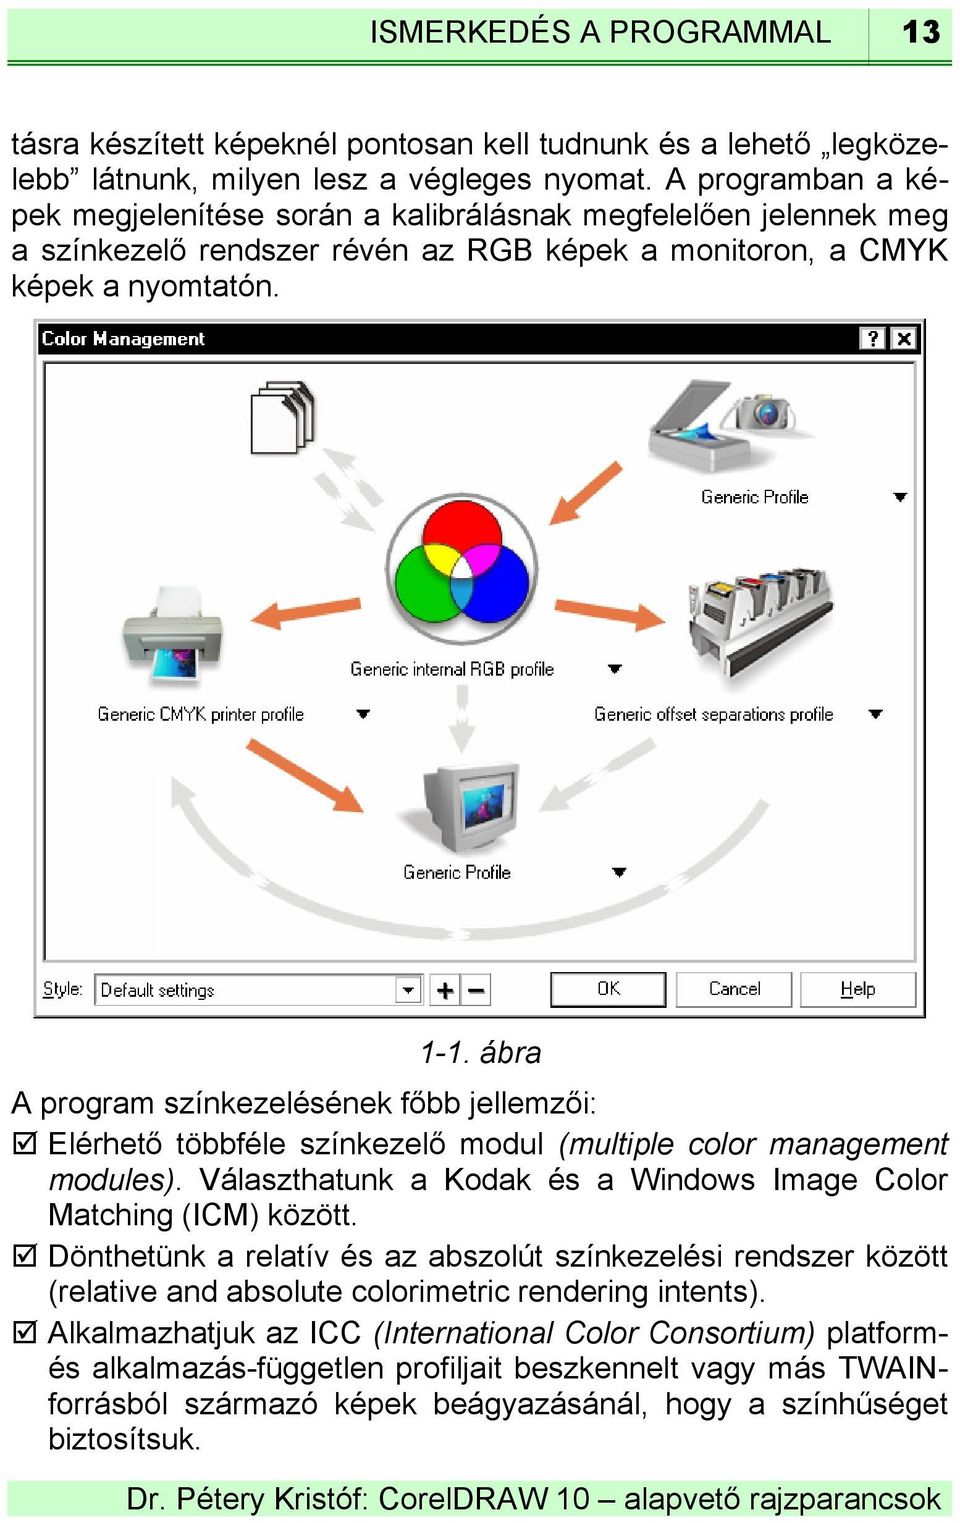 ábra A program színkezelésének főbb jellemzői: Elérhető többféle színkezelő modul (multiple color management modules). Választhatunk a Kodak és a Windows Image Color Matching (ICM) között.